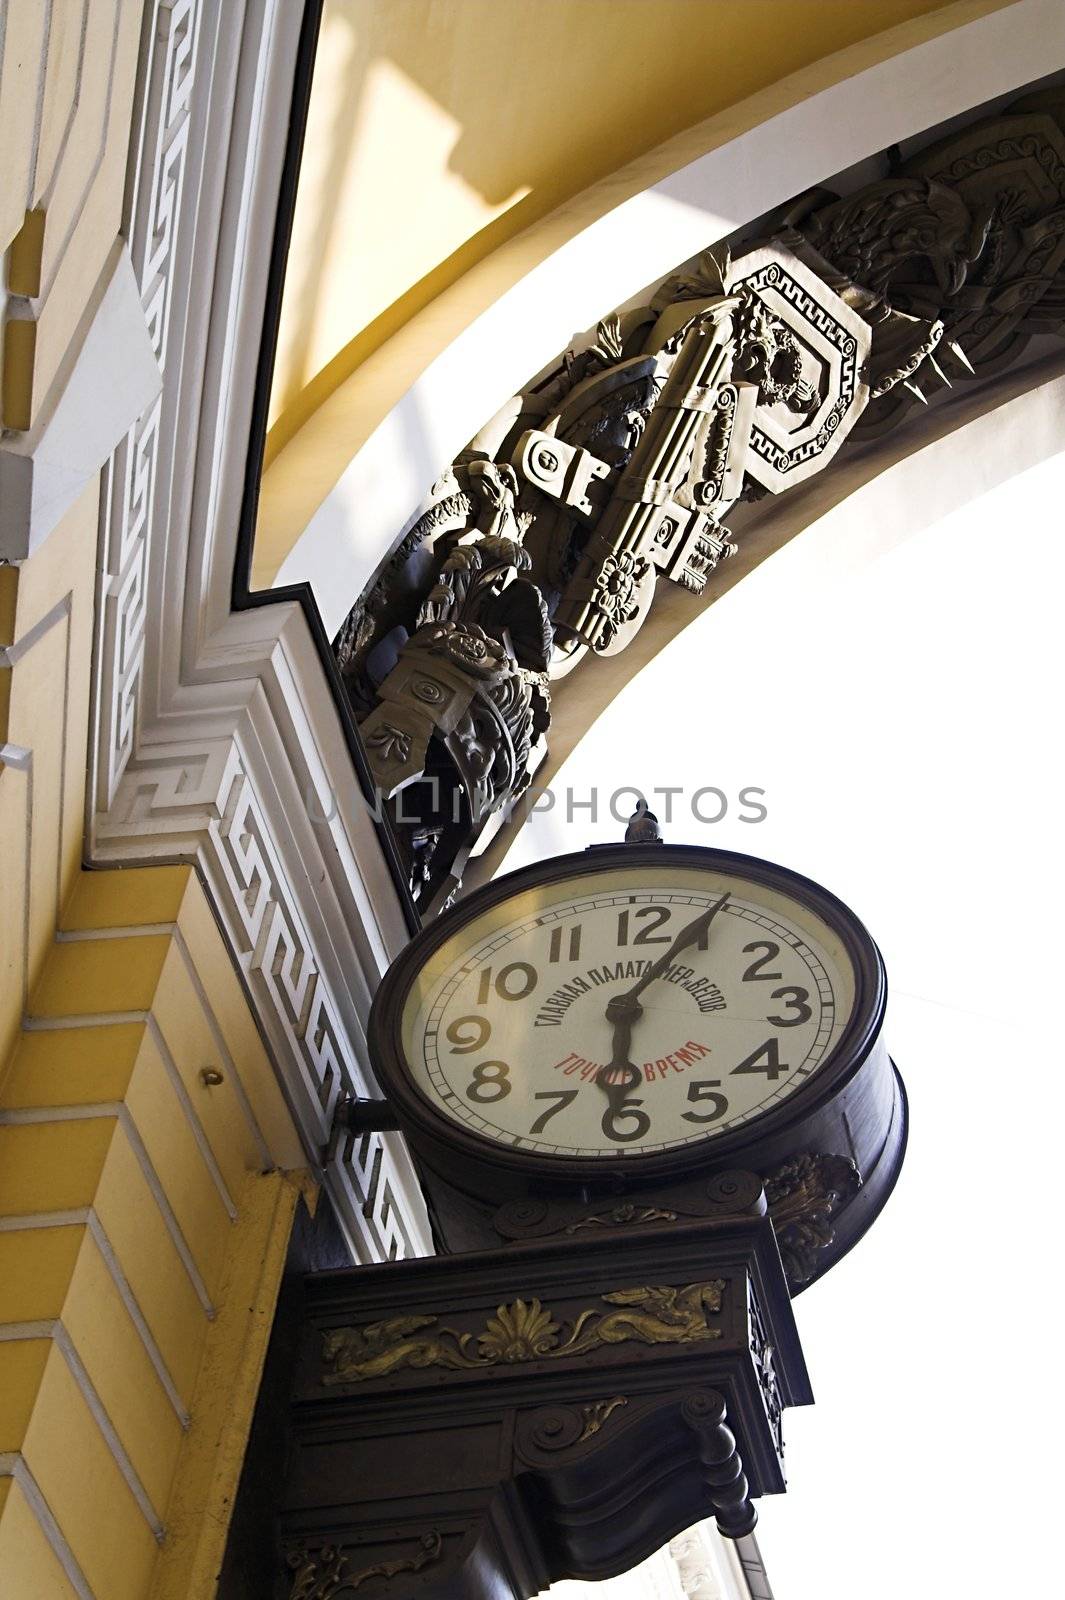 Old-style Public Clocks by simfan